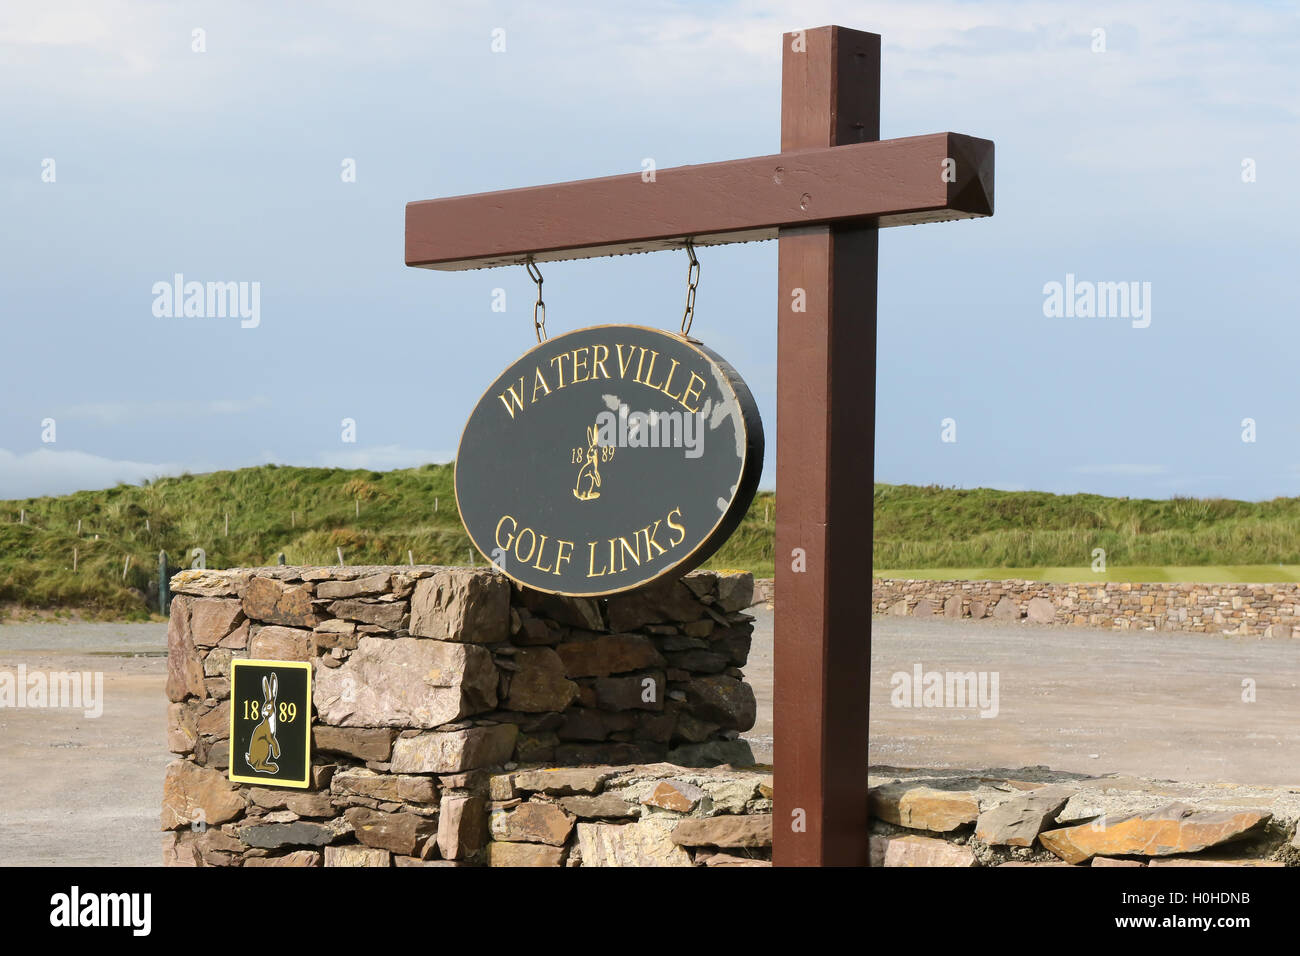 Waterville Golf Links, Waterville, dans le comté de Kerry, Irlande. Banque D'Images